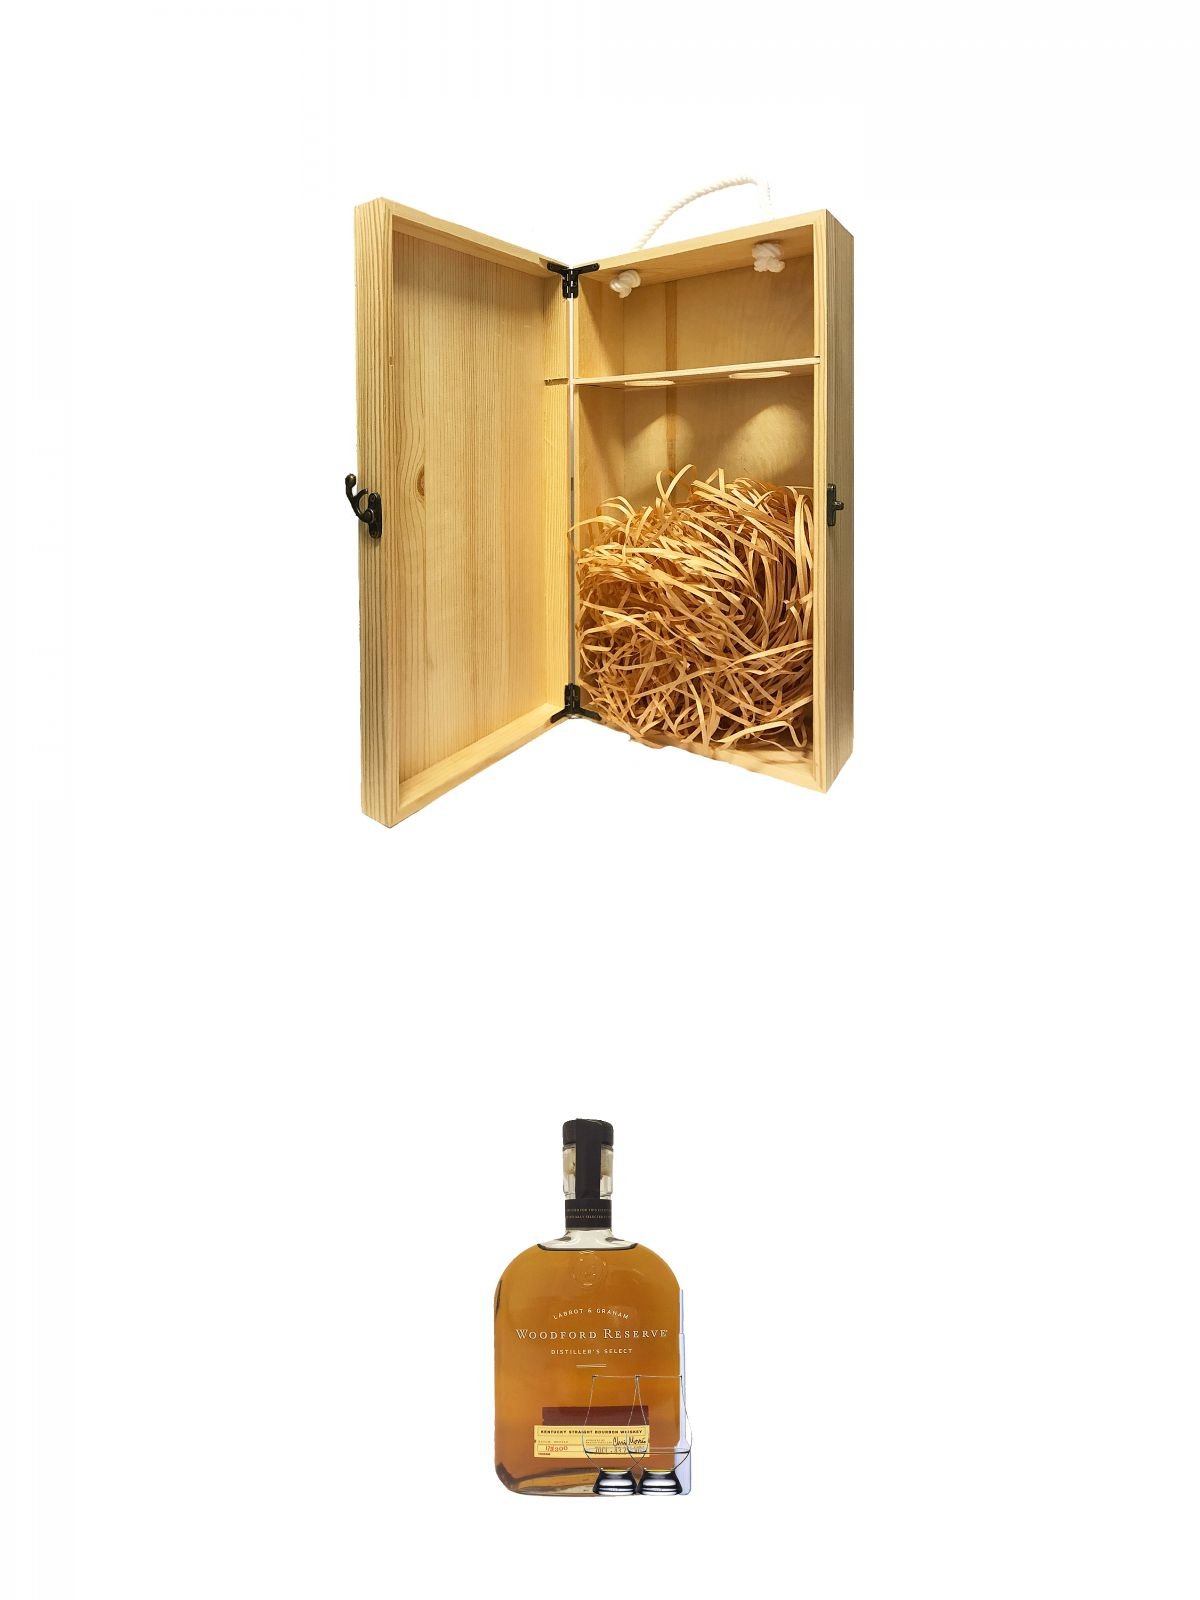 1a Whisky Holzbox für 2 Flaschen mit Hakenverschluss + Woodford Reserve Distillers Select USA 0,7 Liter + 2 Glencairn Gläser + Einwegpipette 1 Stück